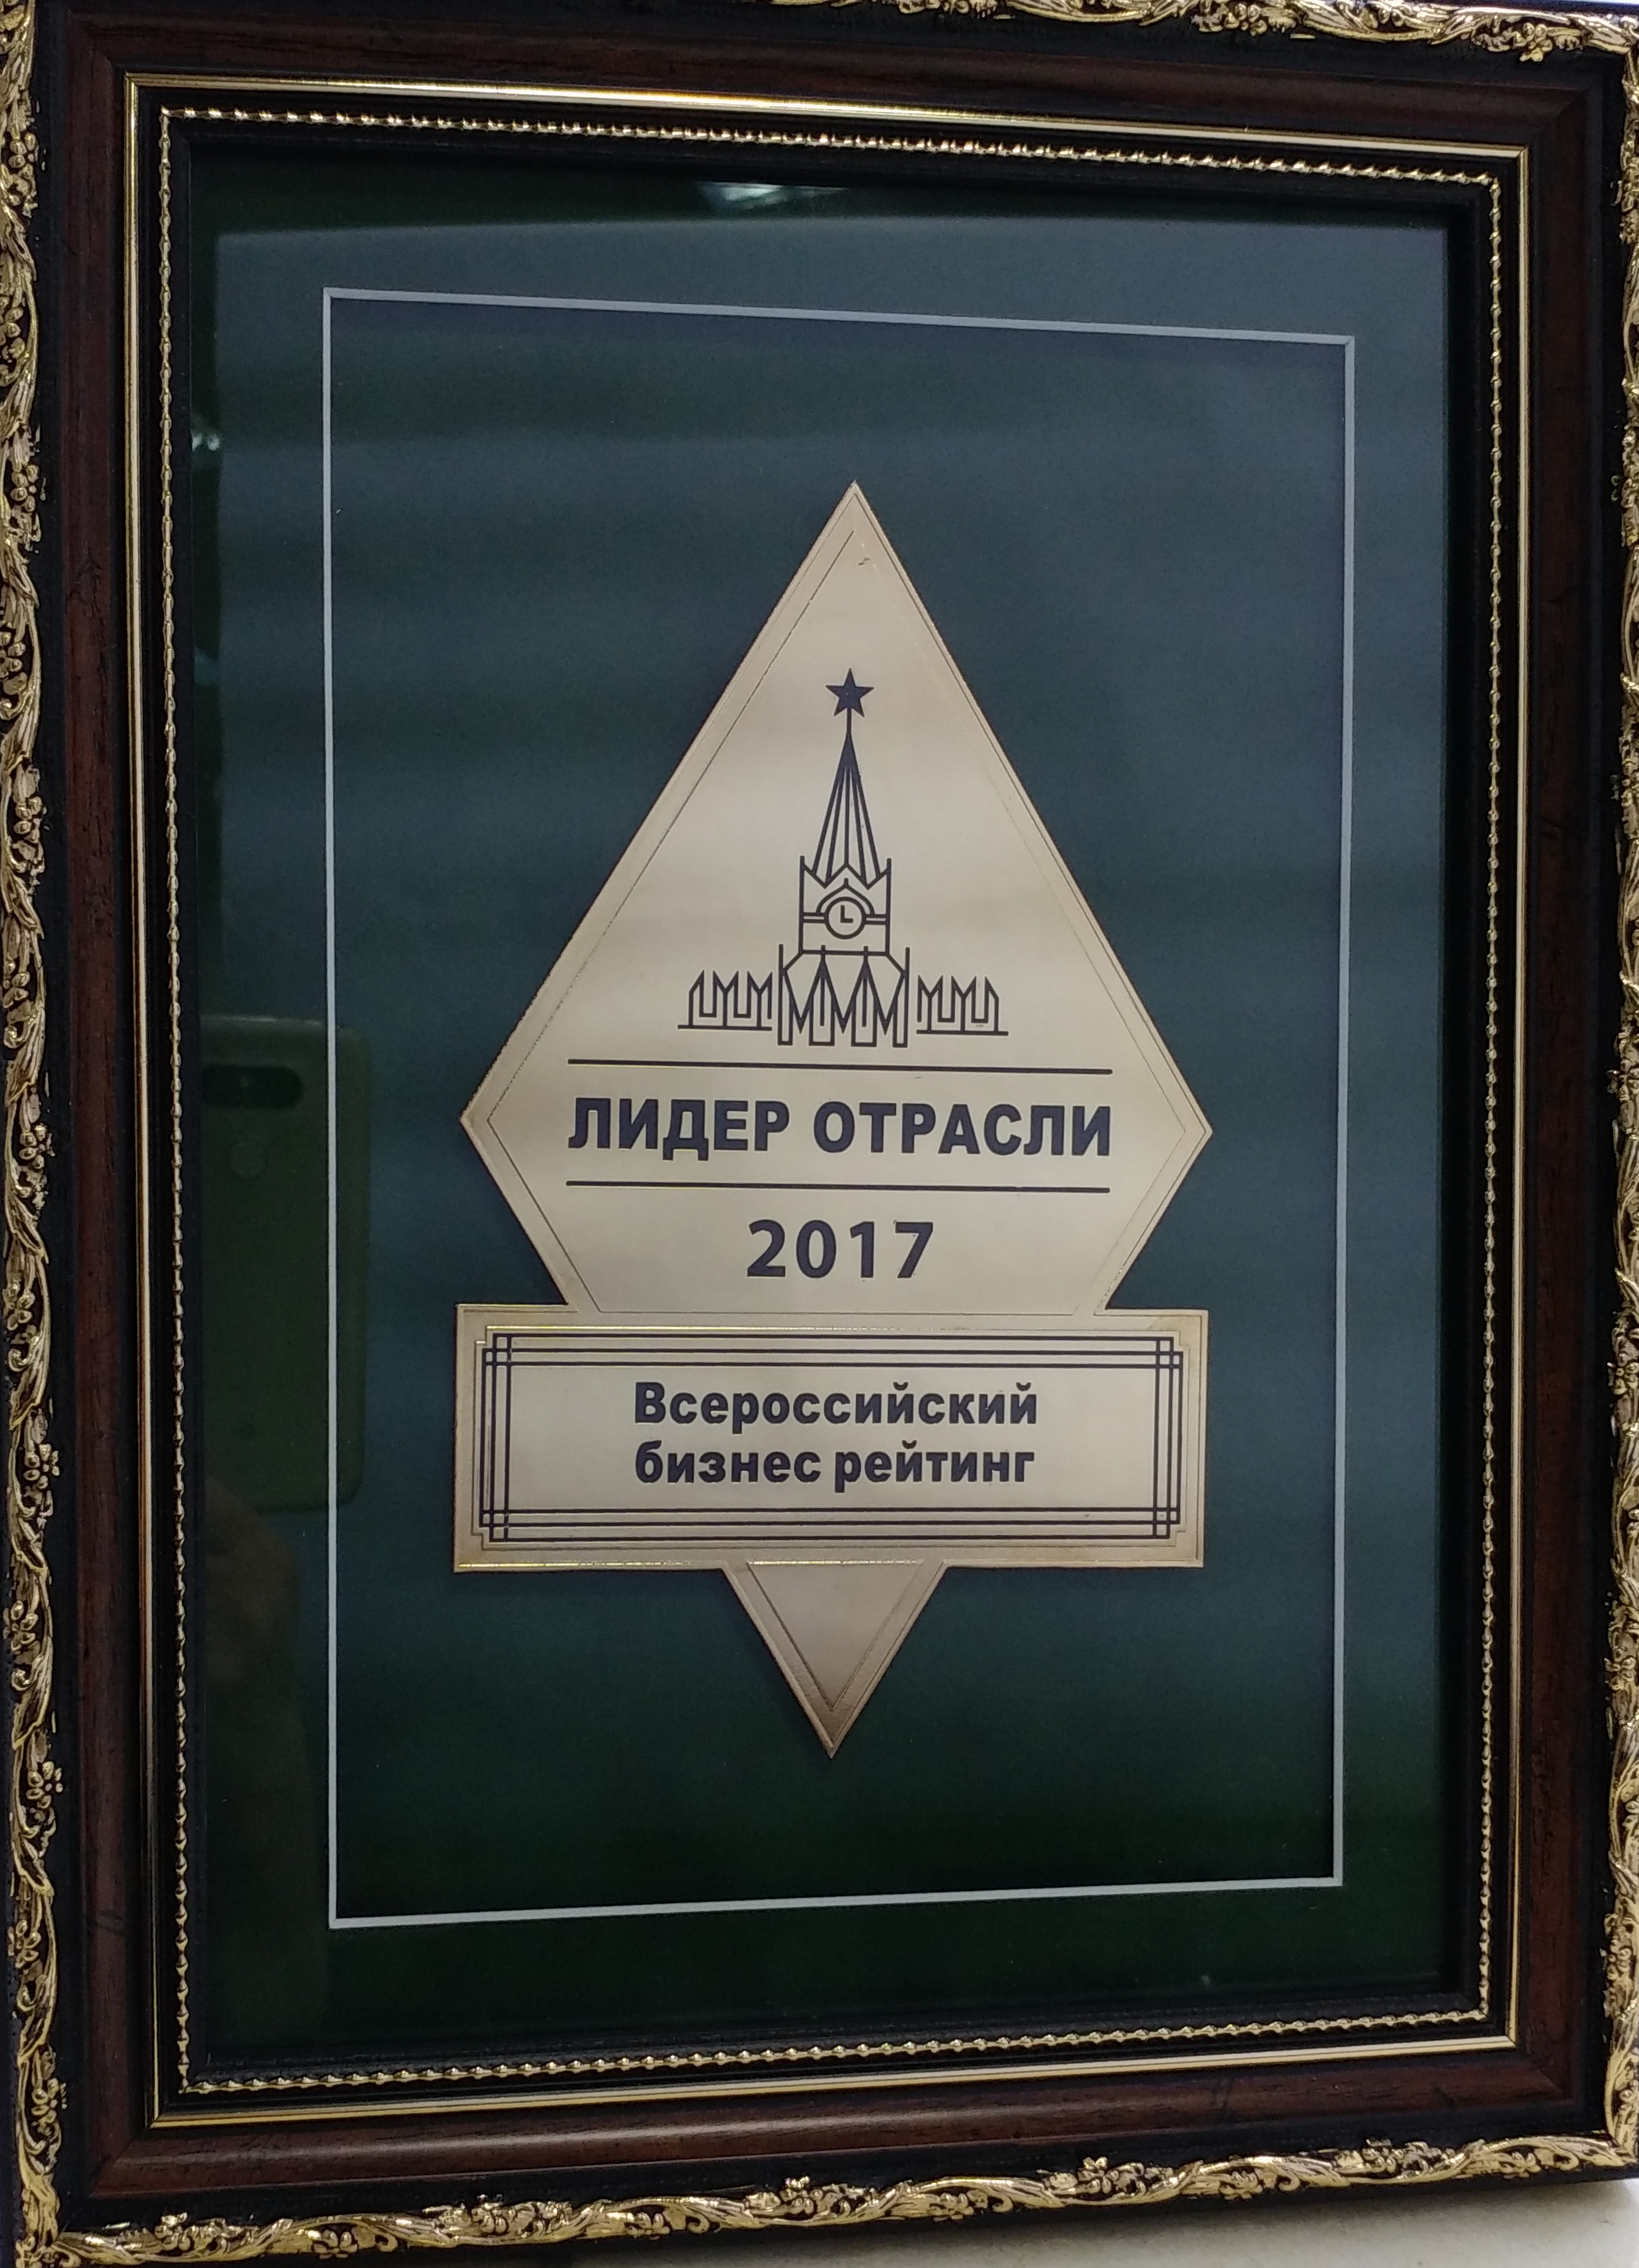 Национальная награда "Лидер отрасли 2017"